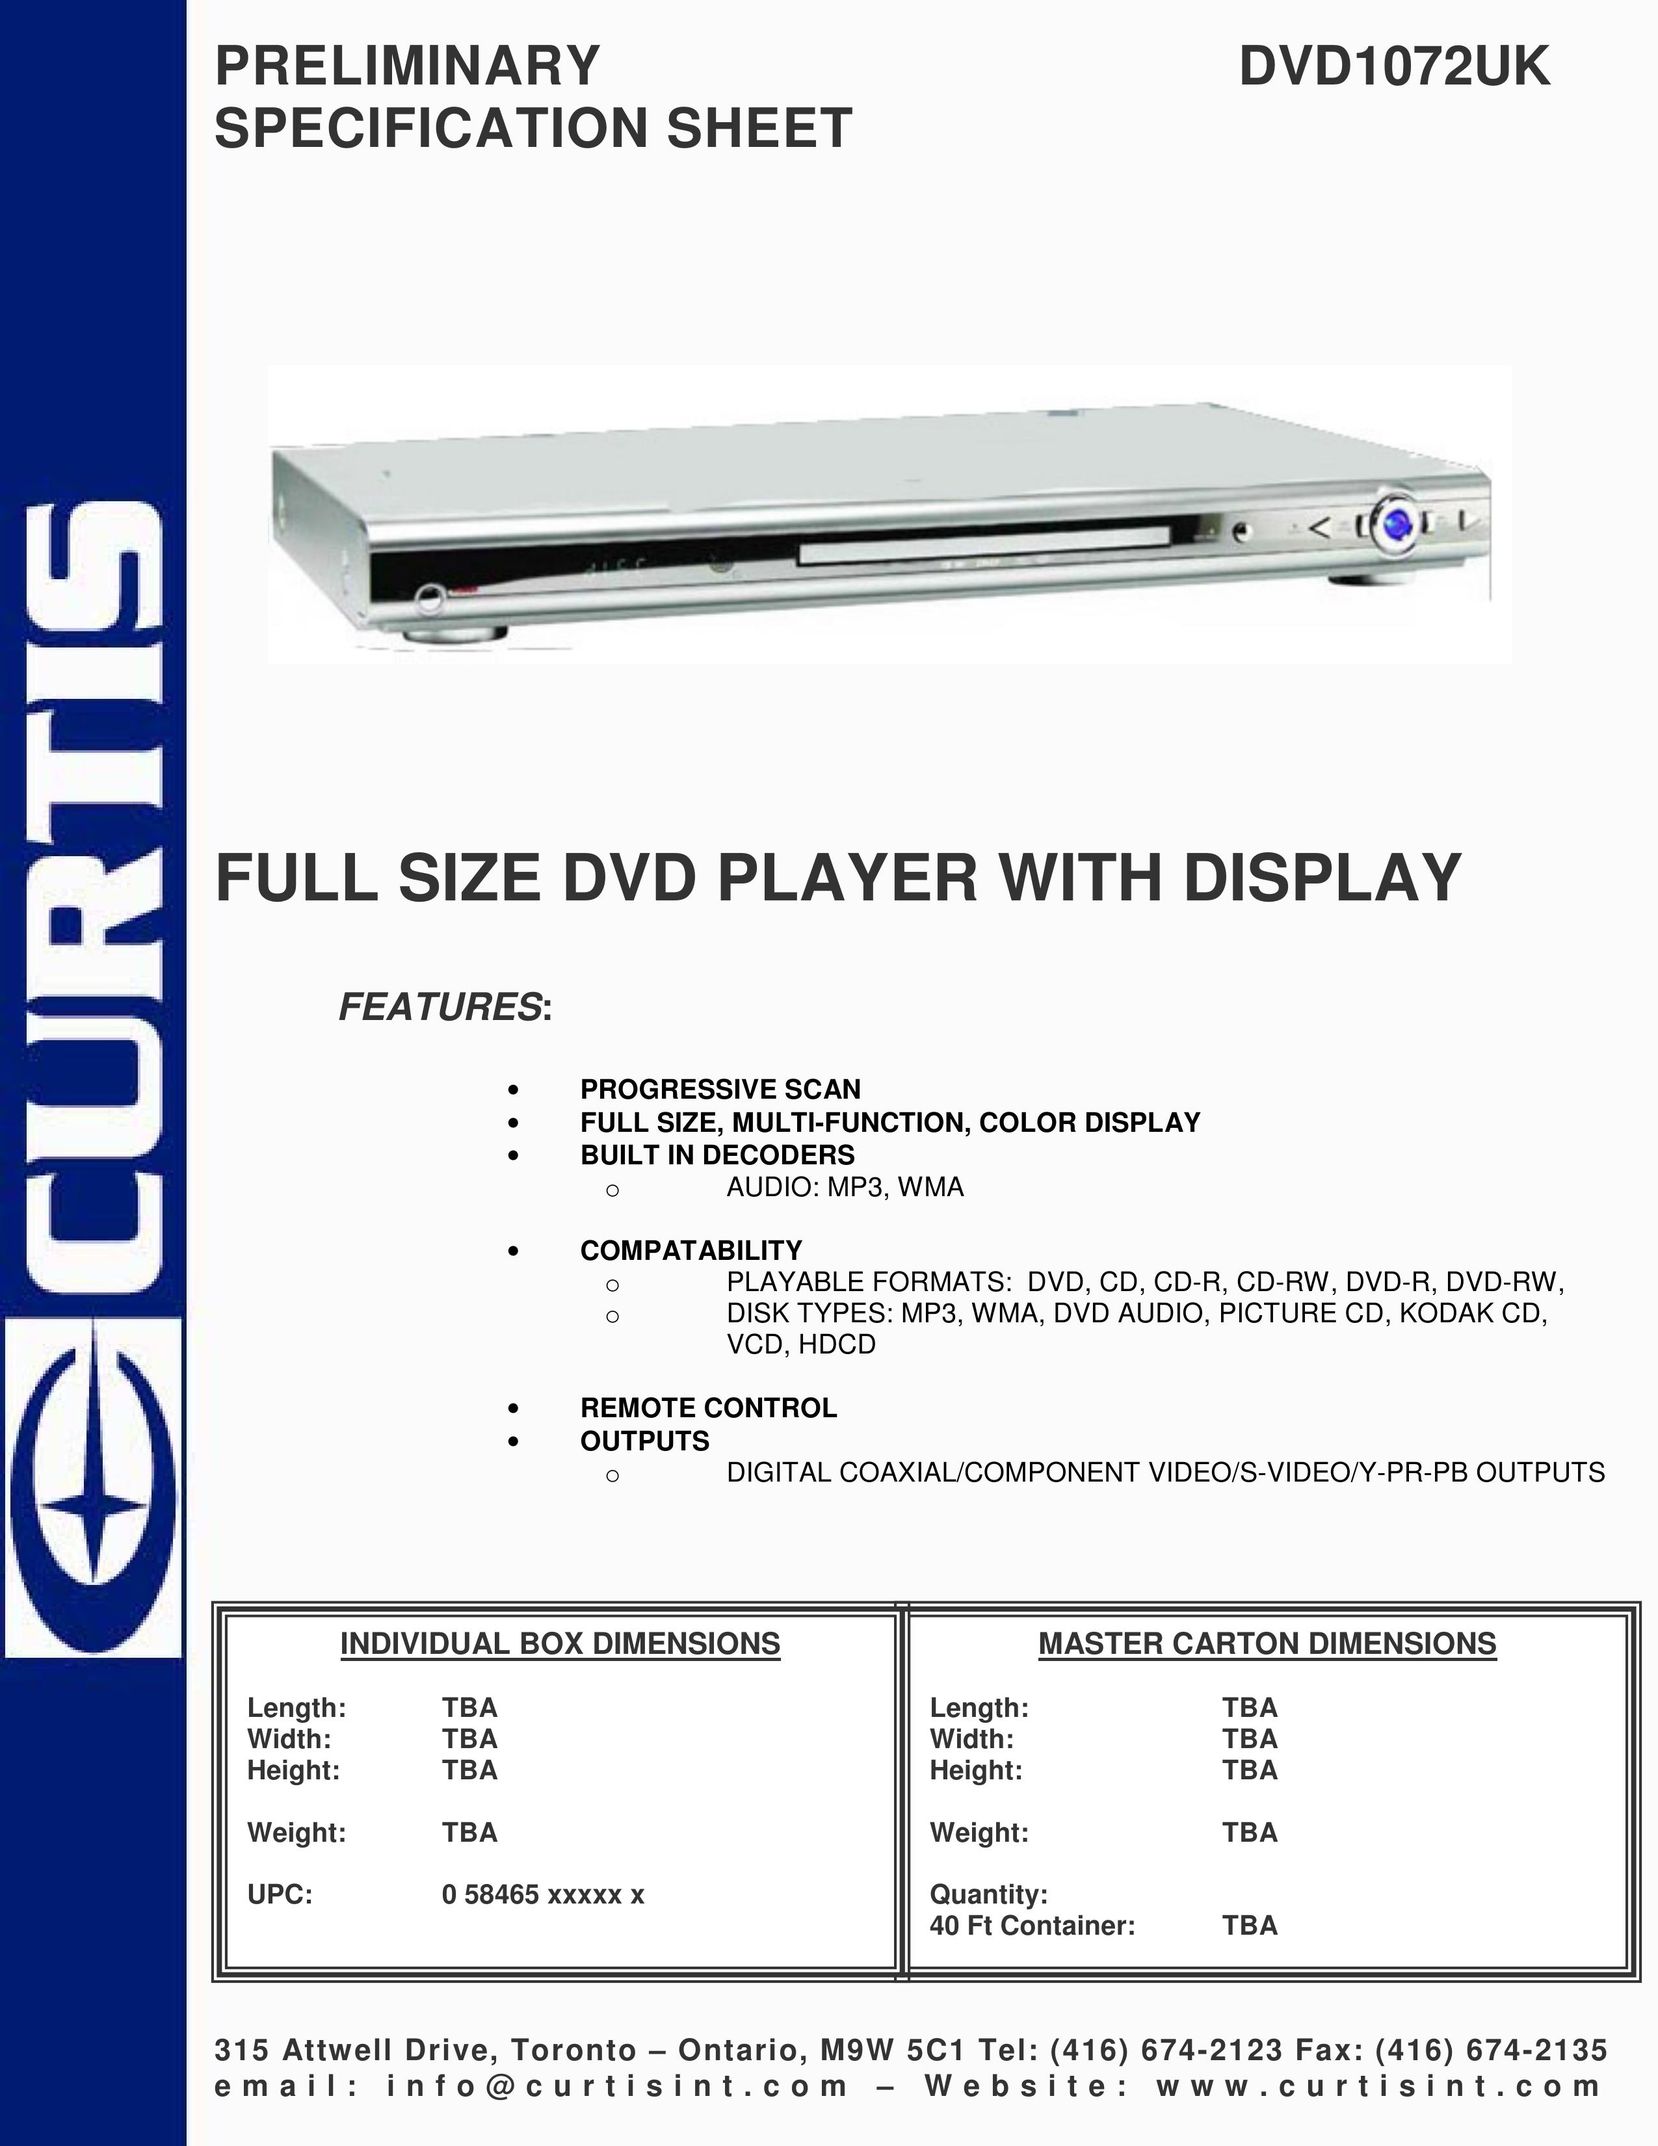 Curtis DVD1072UK DVD Player User Manual